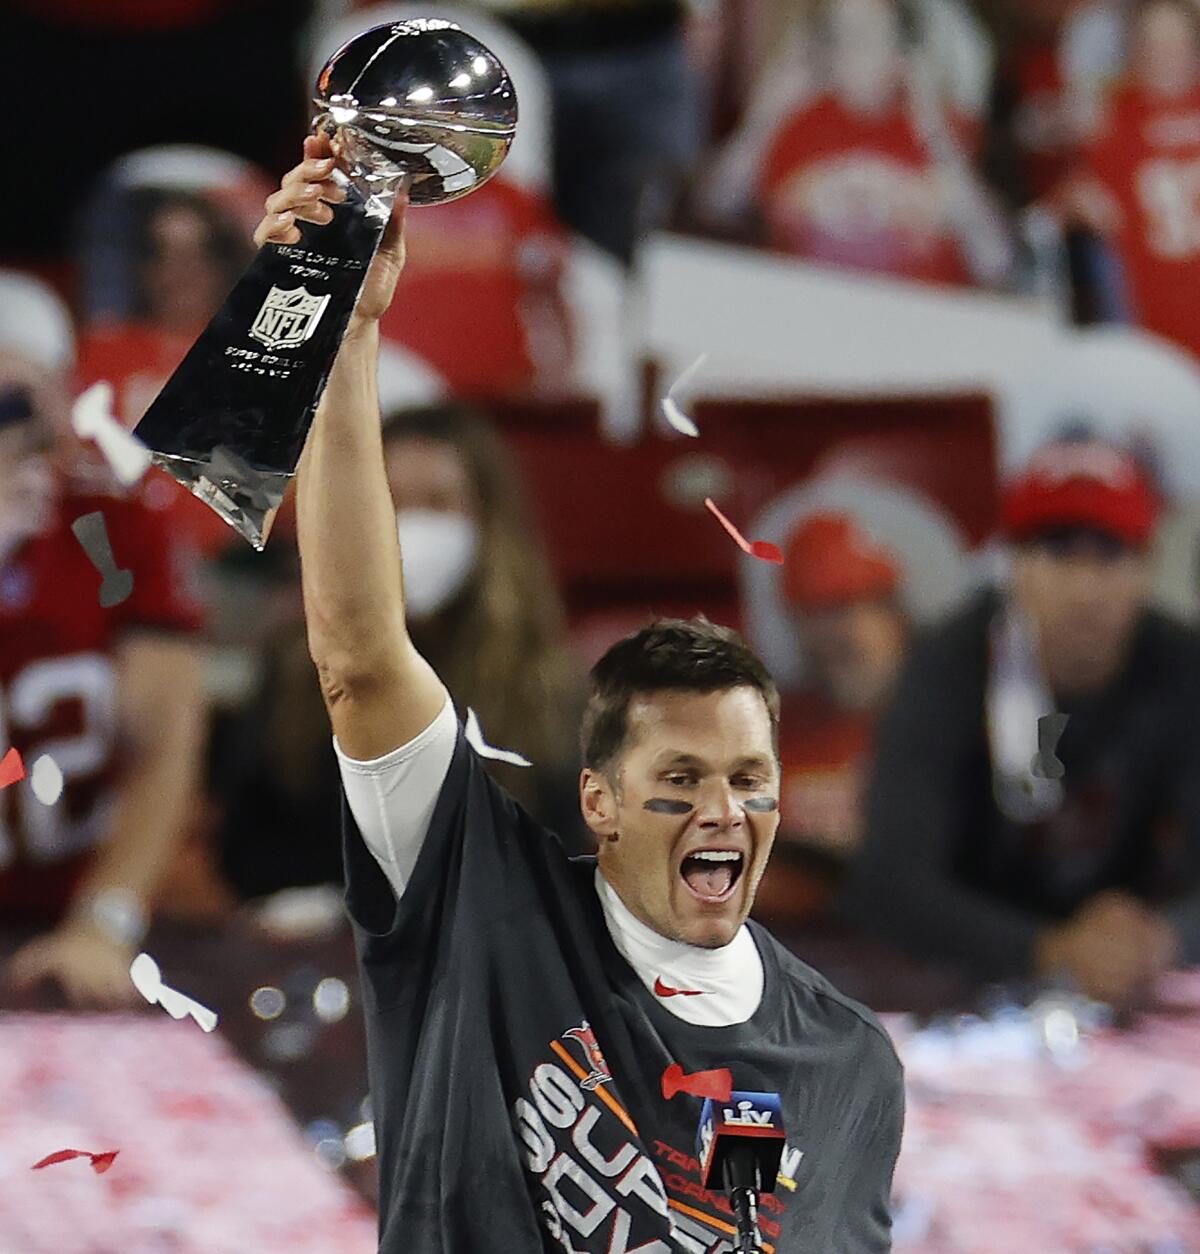 La NFL confirma el retiro de Tom Brady luego de 22 temporadas y siete Super Bowls